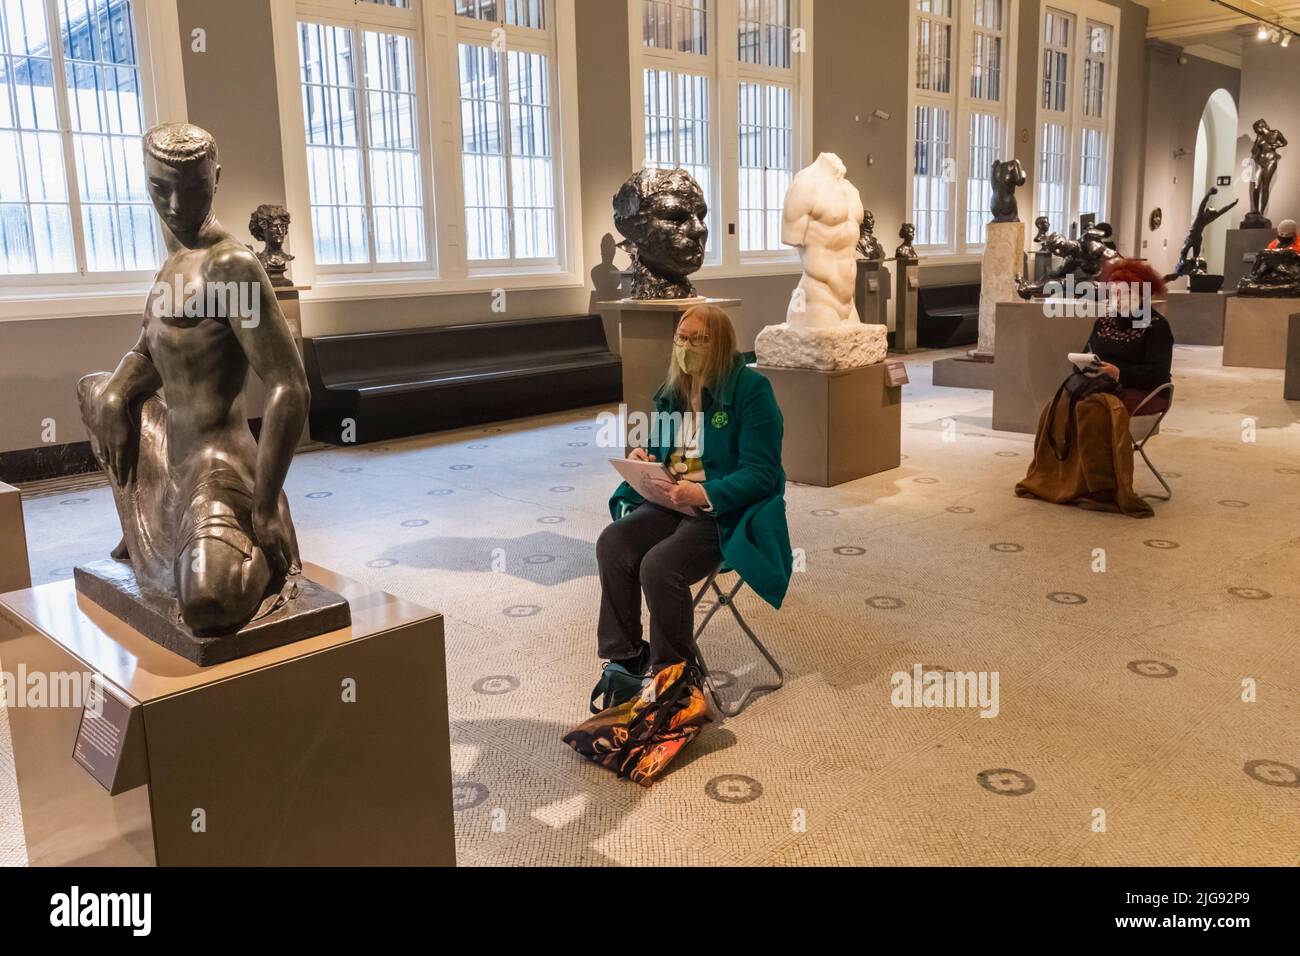 Angleterre, Londres, Knightsbridge, Musée Victoria et Albert, vue intérieure des visiteurs croquis sculptures Banque D'Images